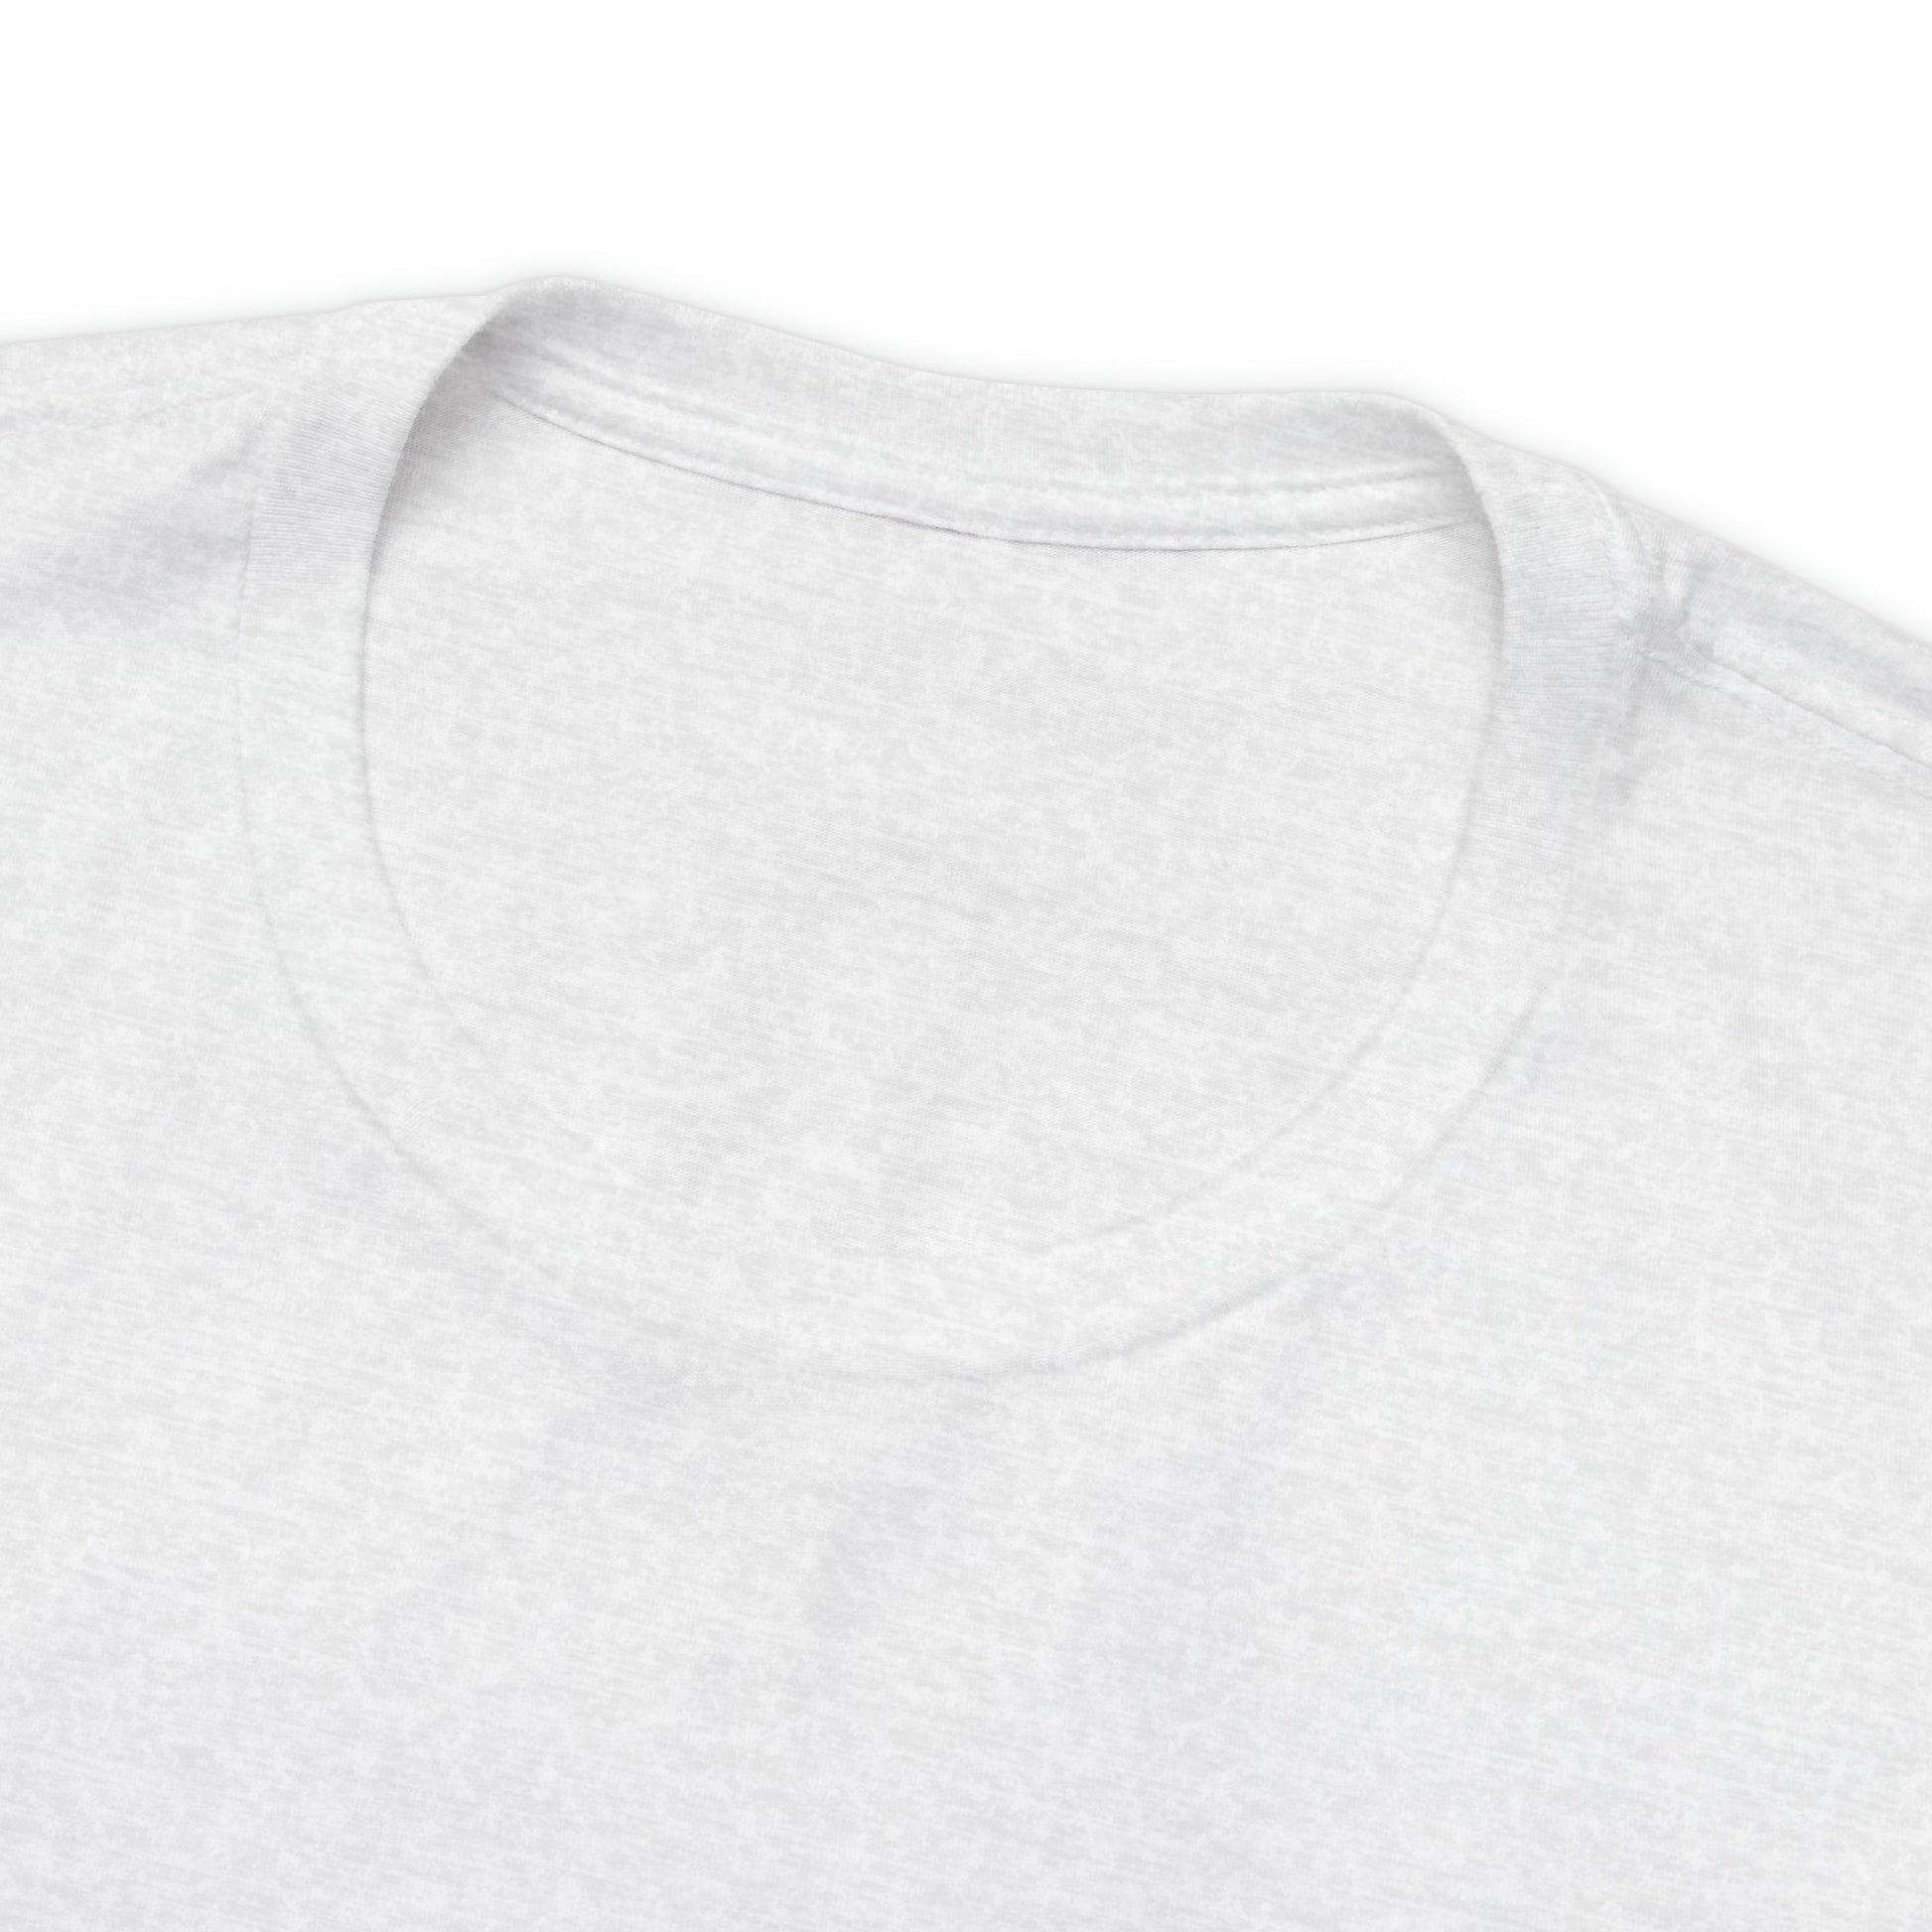 Horse T-shirt, Palomino Horse Shirt, Front / Back Print - FlooredByArt